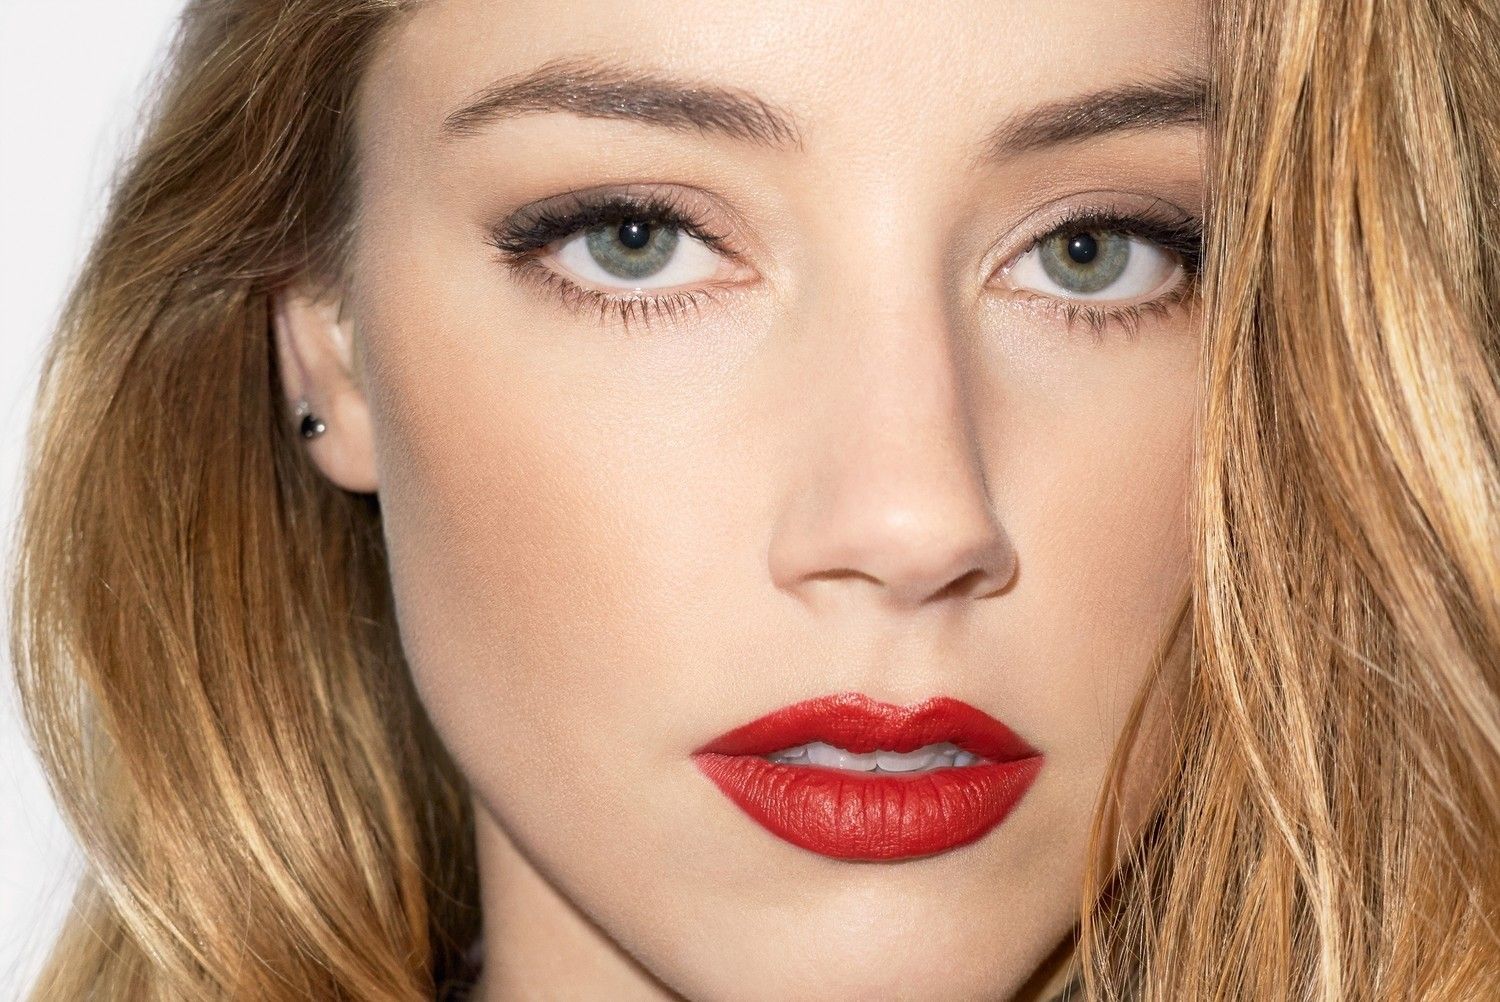 #face, #women, #closeup, #red lipstick, #blonde, #Amber